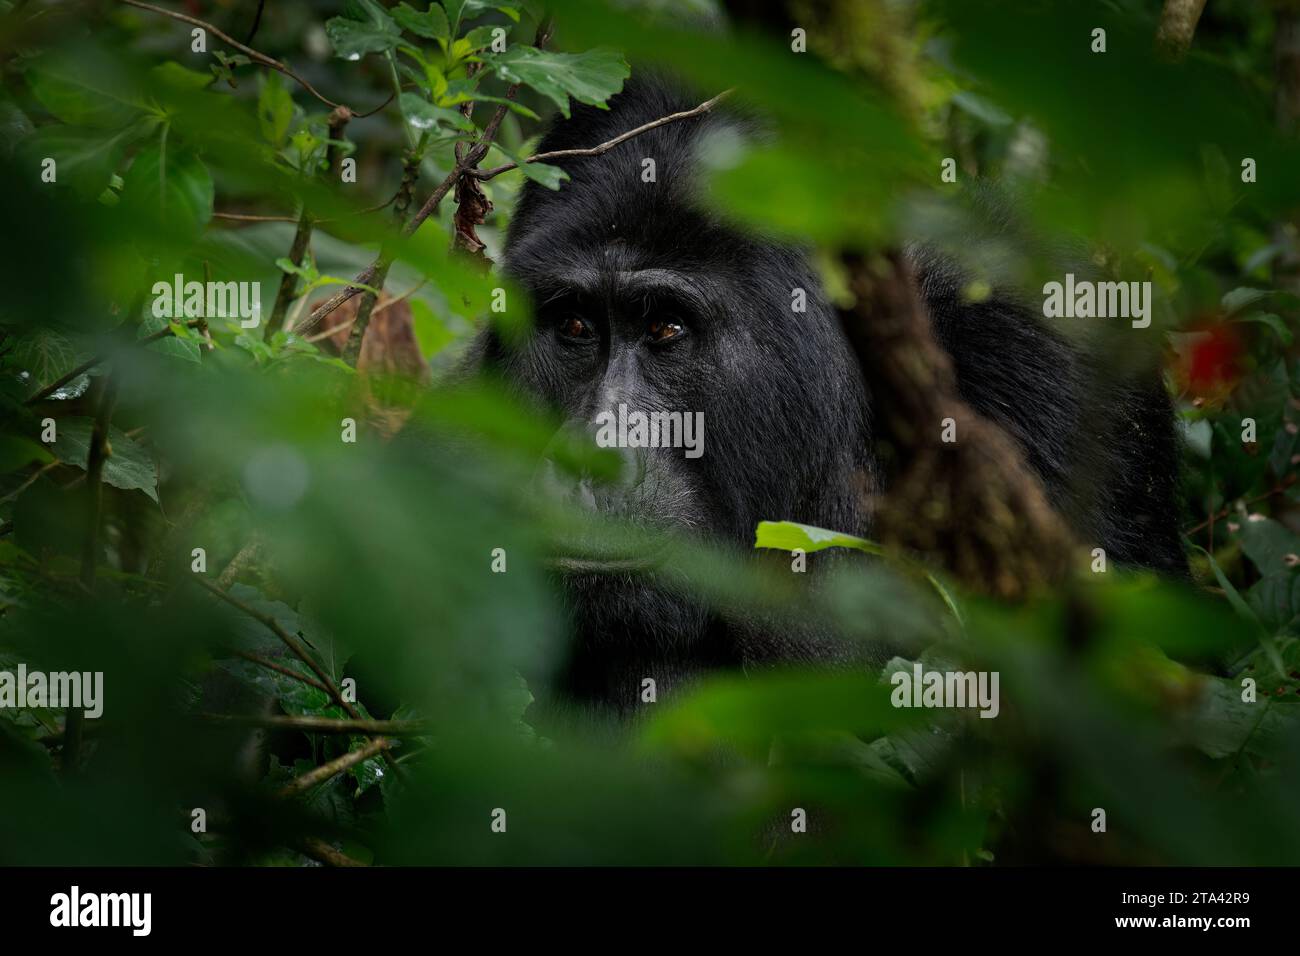 Gorille de l'est - Gorilla beringei plus grand primate vivant en danger critique d'extinction, gorilles des basses terres ou gorilles de Grauer (graueri) dans le front de pluie vert Banque D'Images